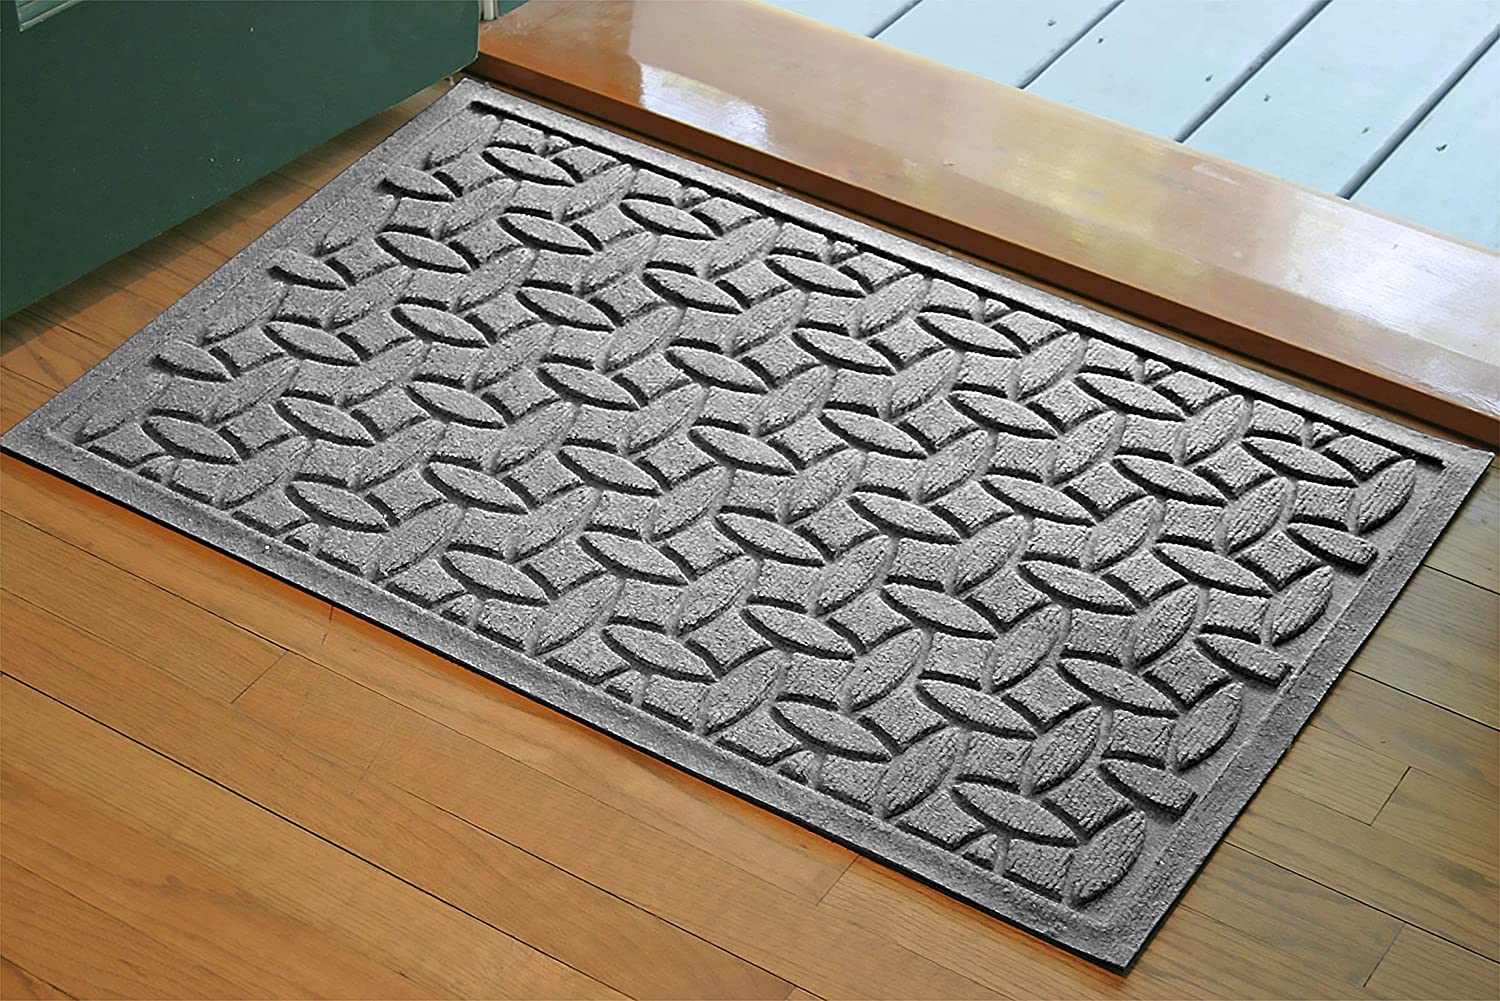 Waterhog doormats